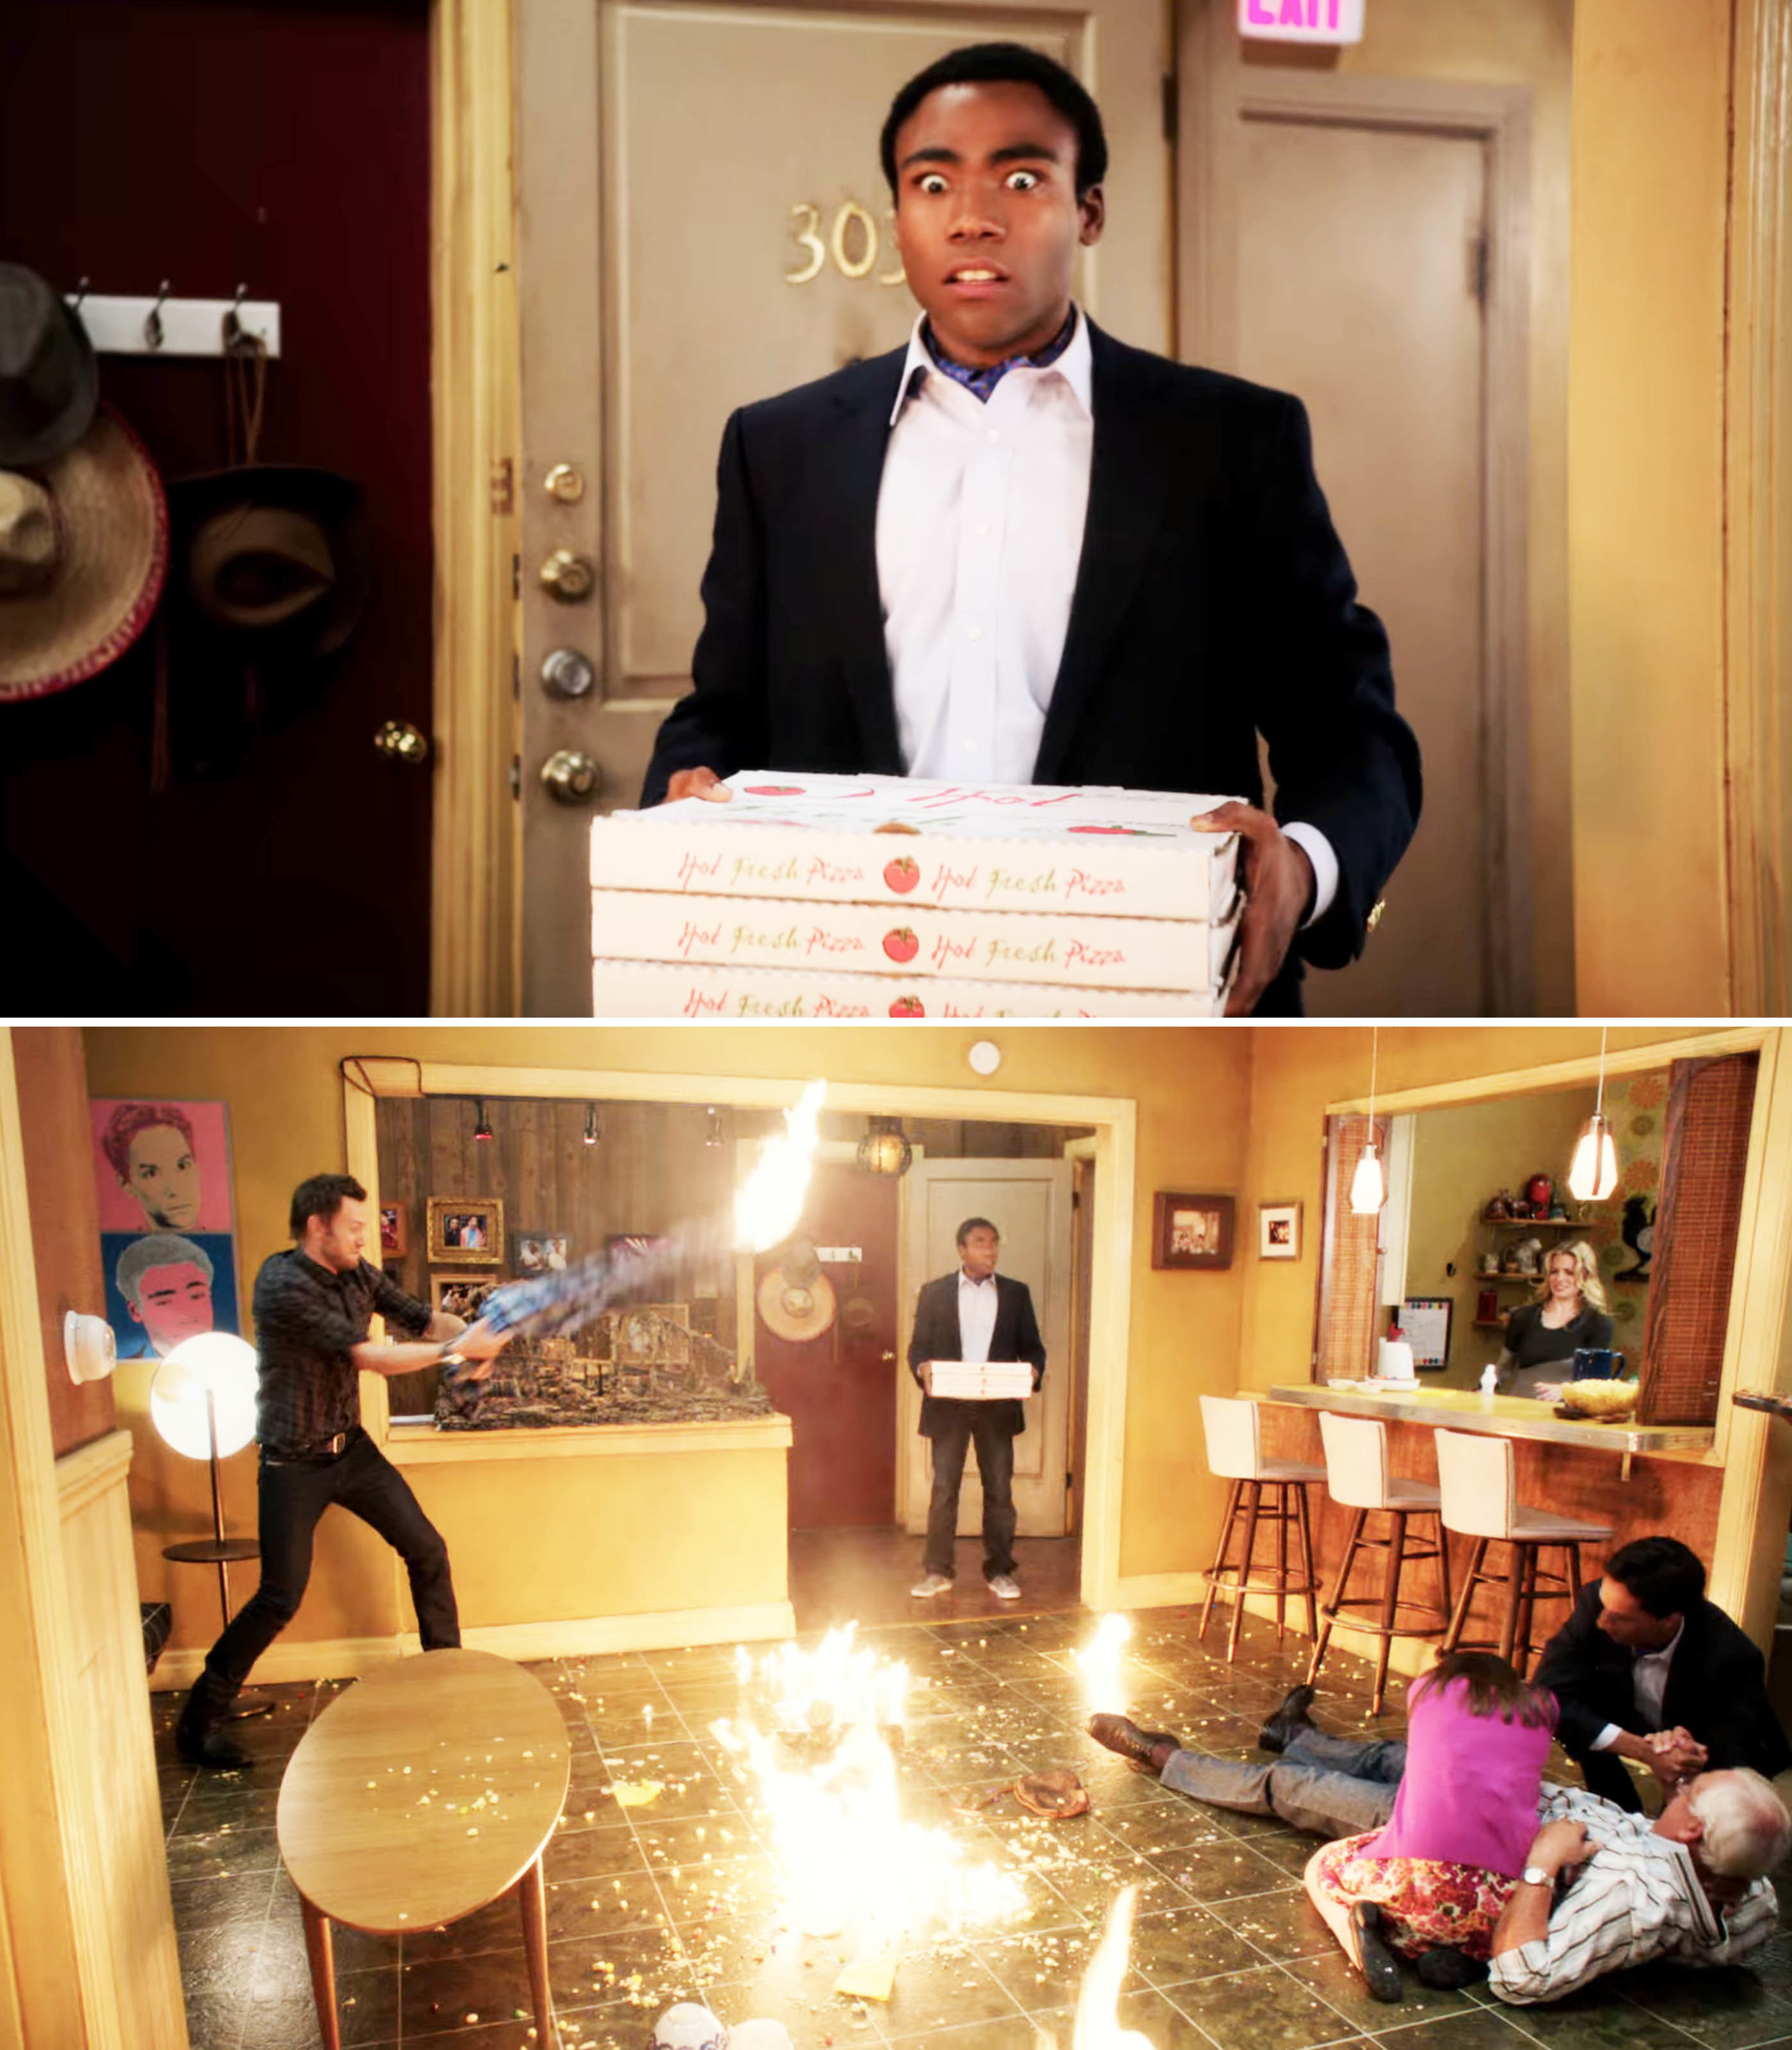 人物走进一个房间用火,人们在地上,他站在那儿震惊盒披萨